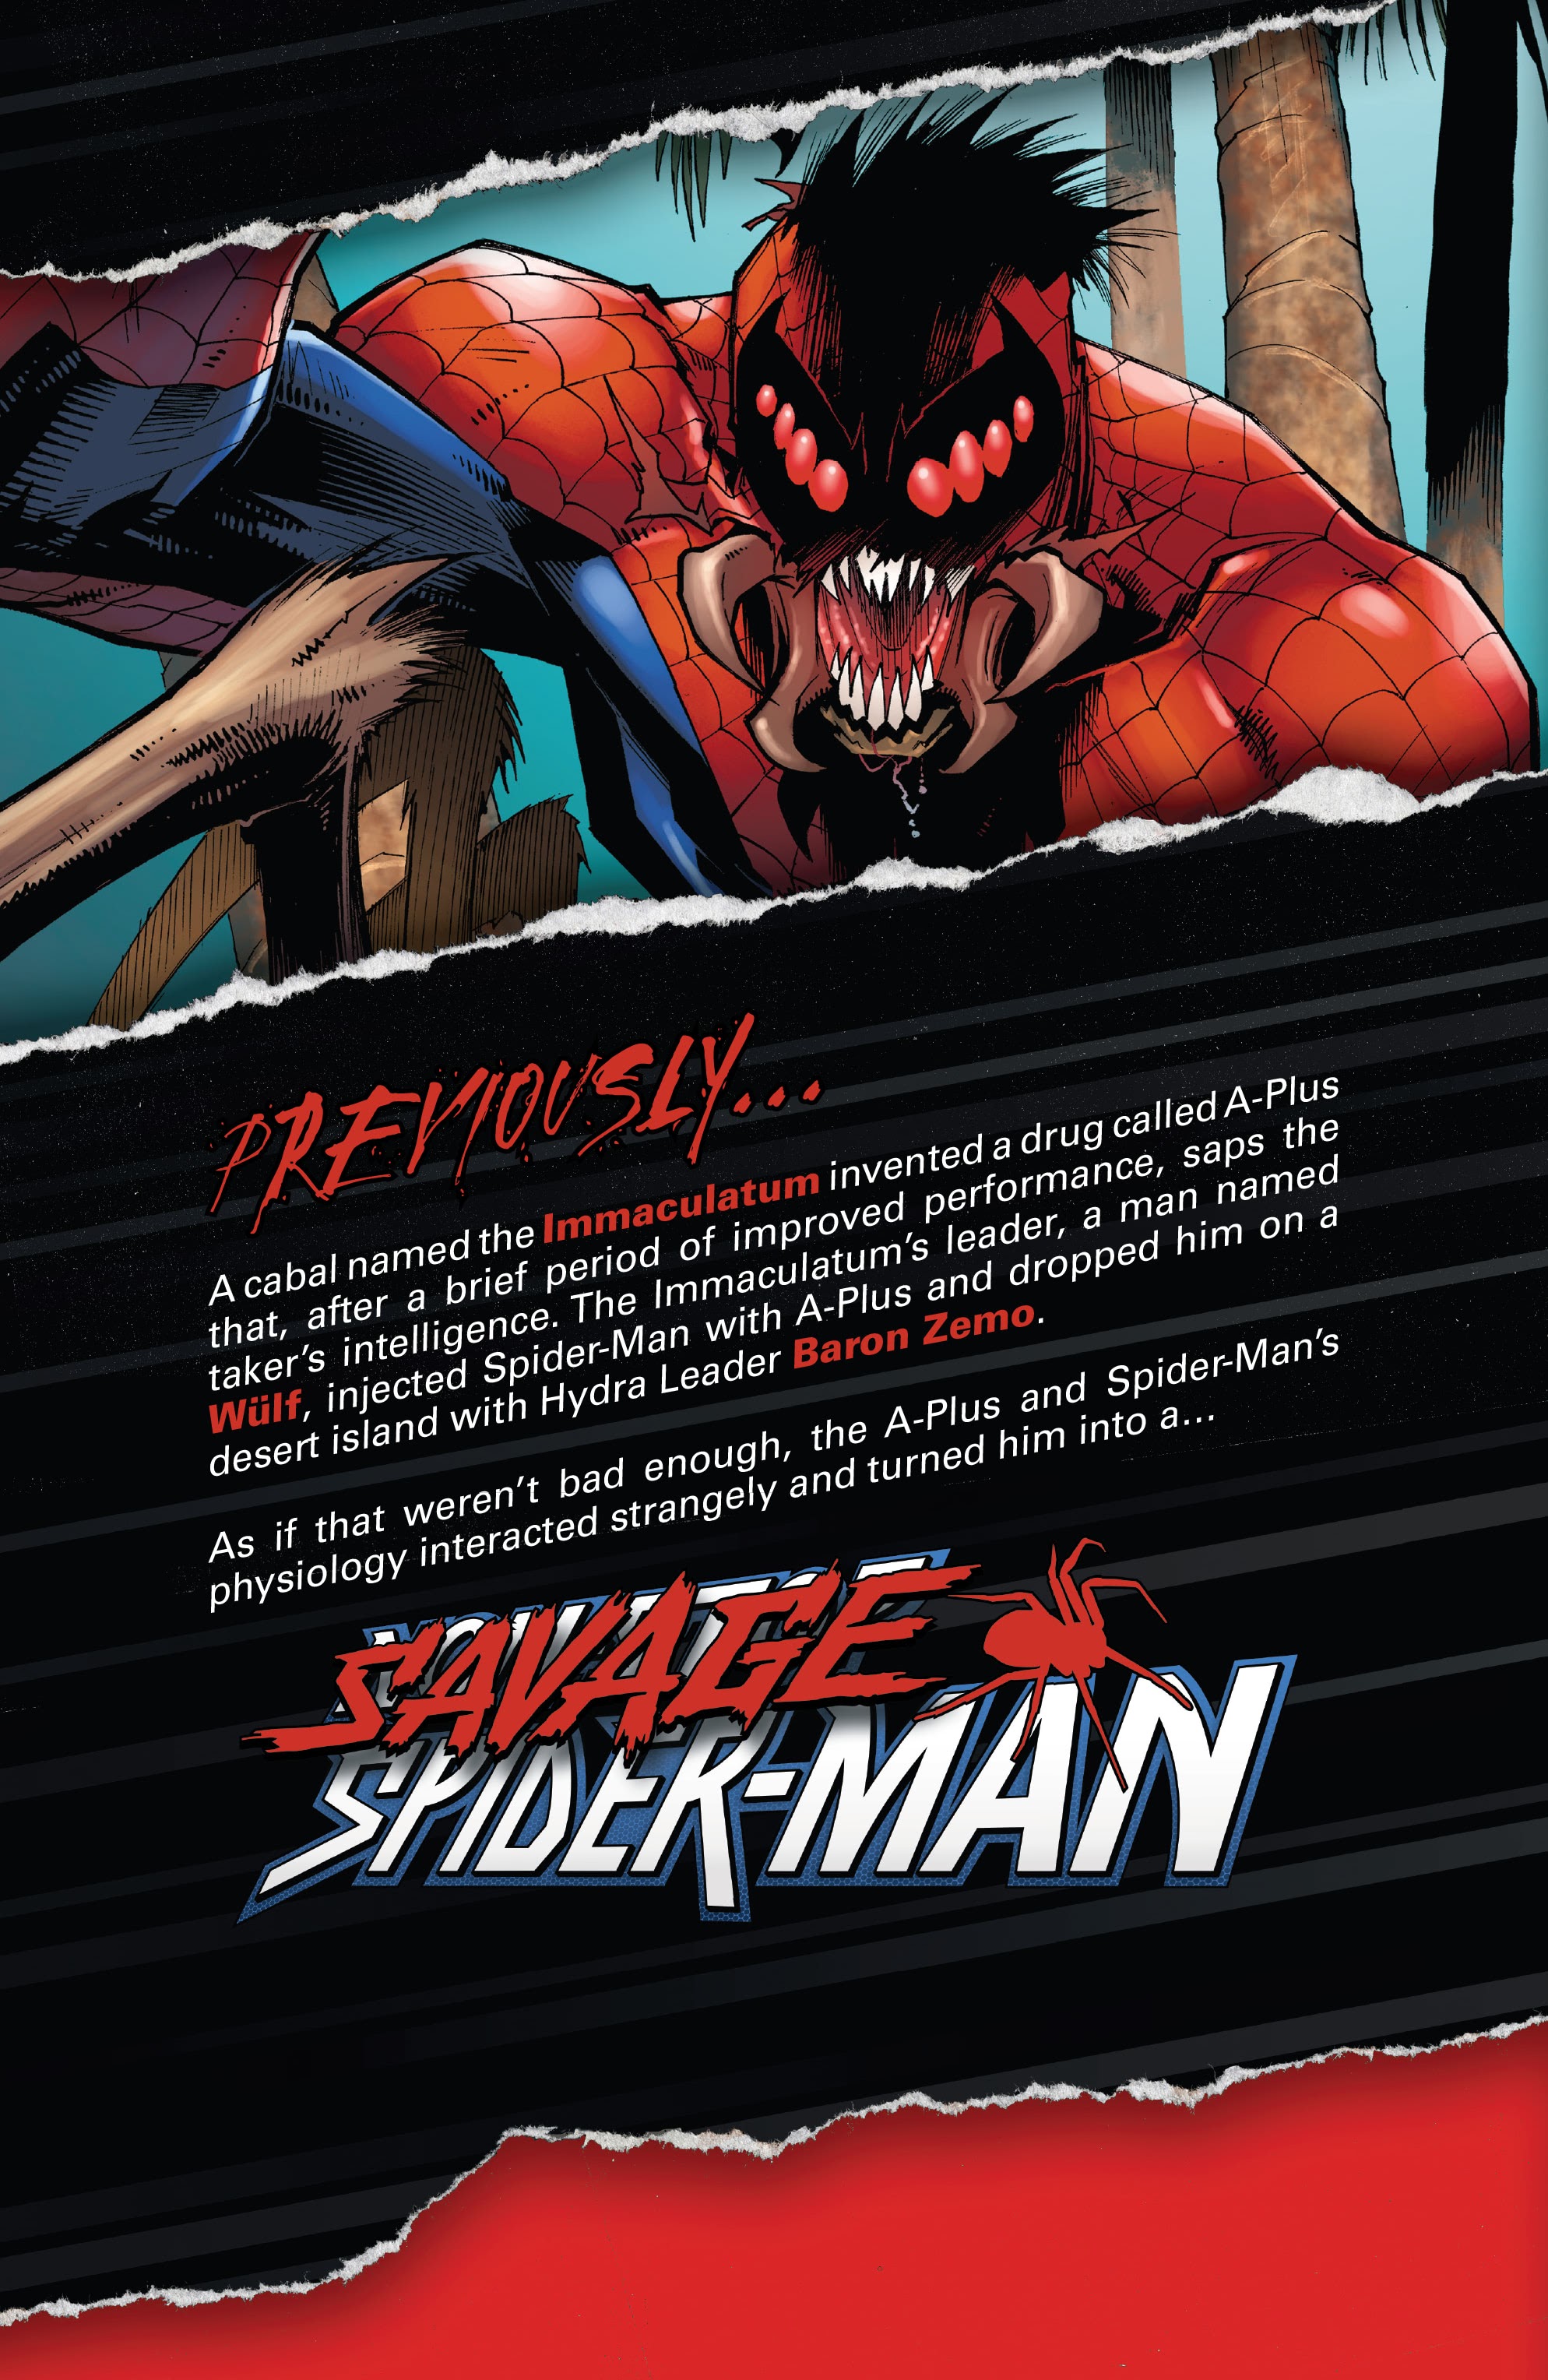 Read online Savage Spider-Man comic -  Issue #1 - 5